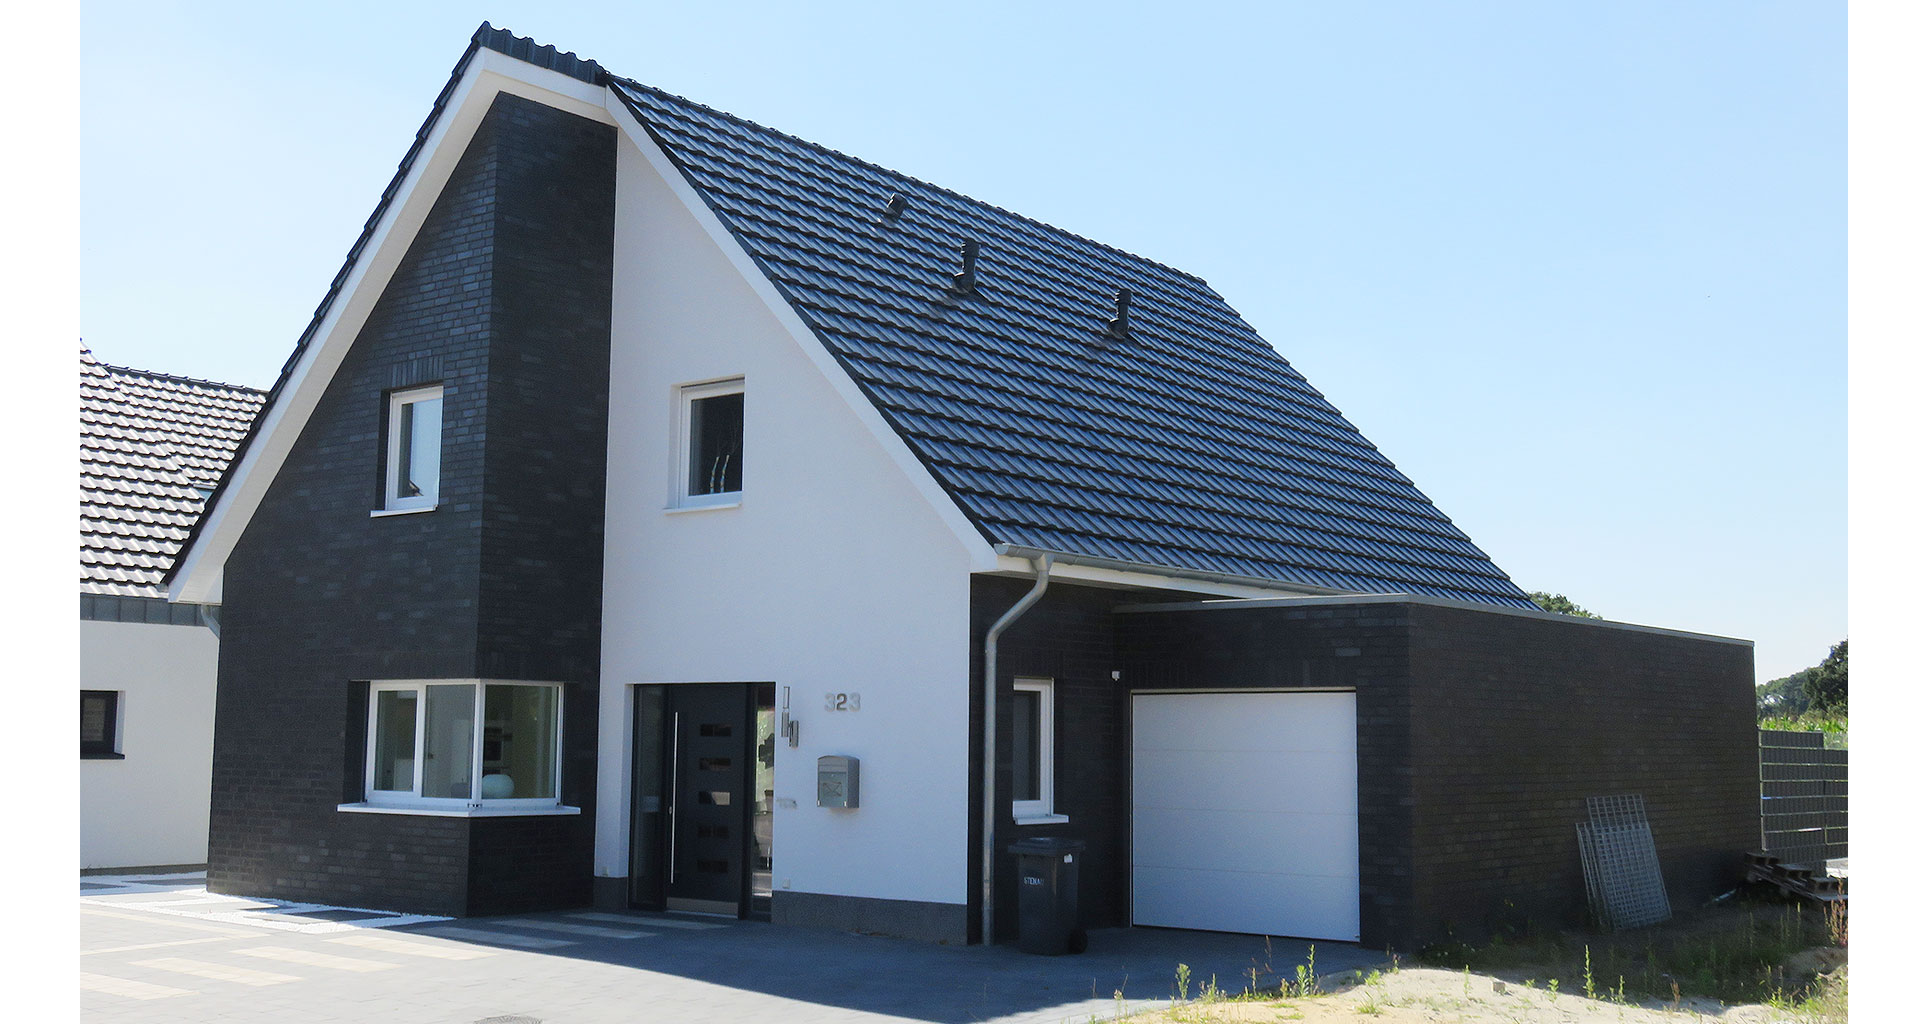 Einfamilienhaus Front mit Eingang in Grafschaft Bentheim Nordhorn 2016